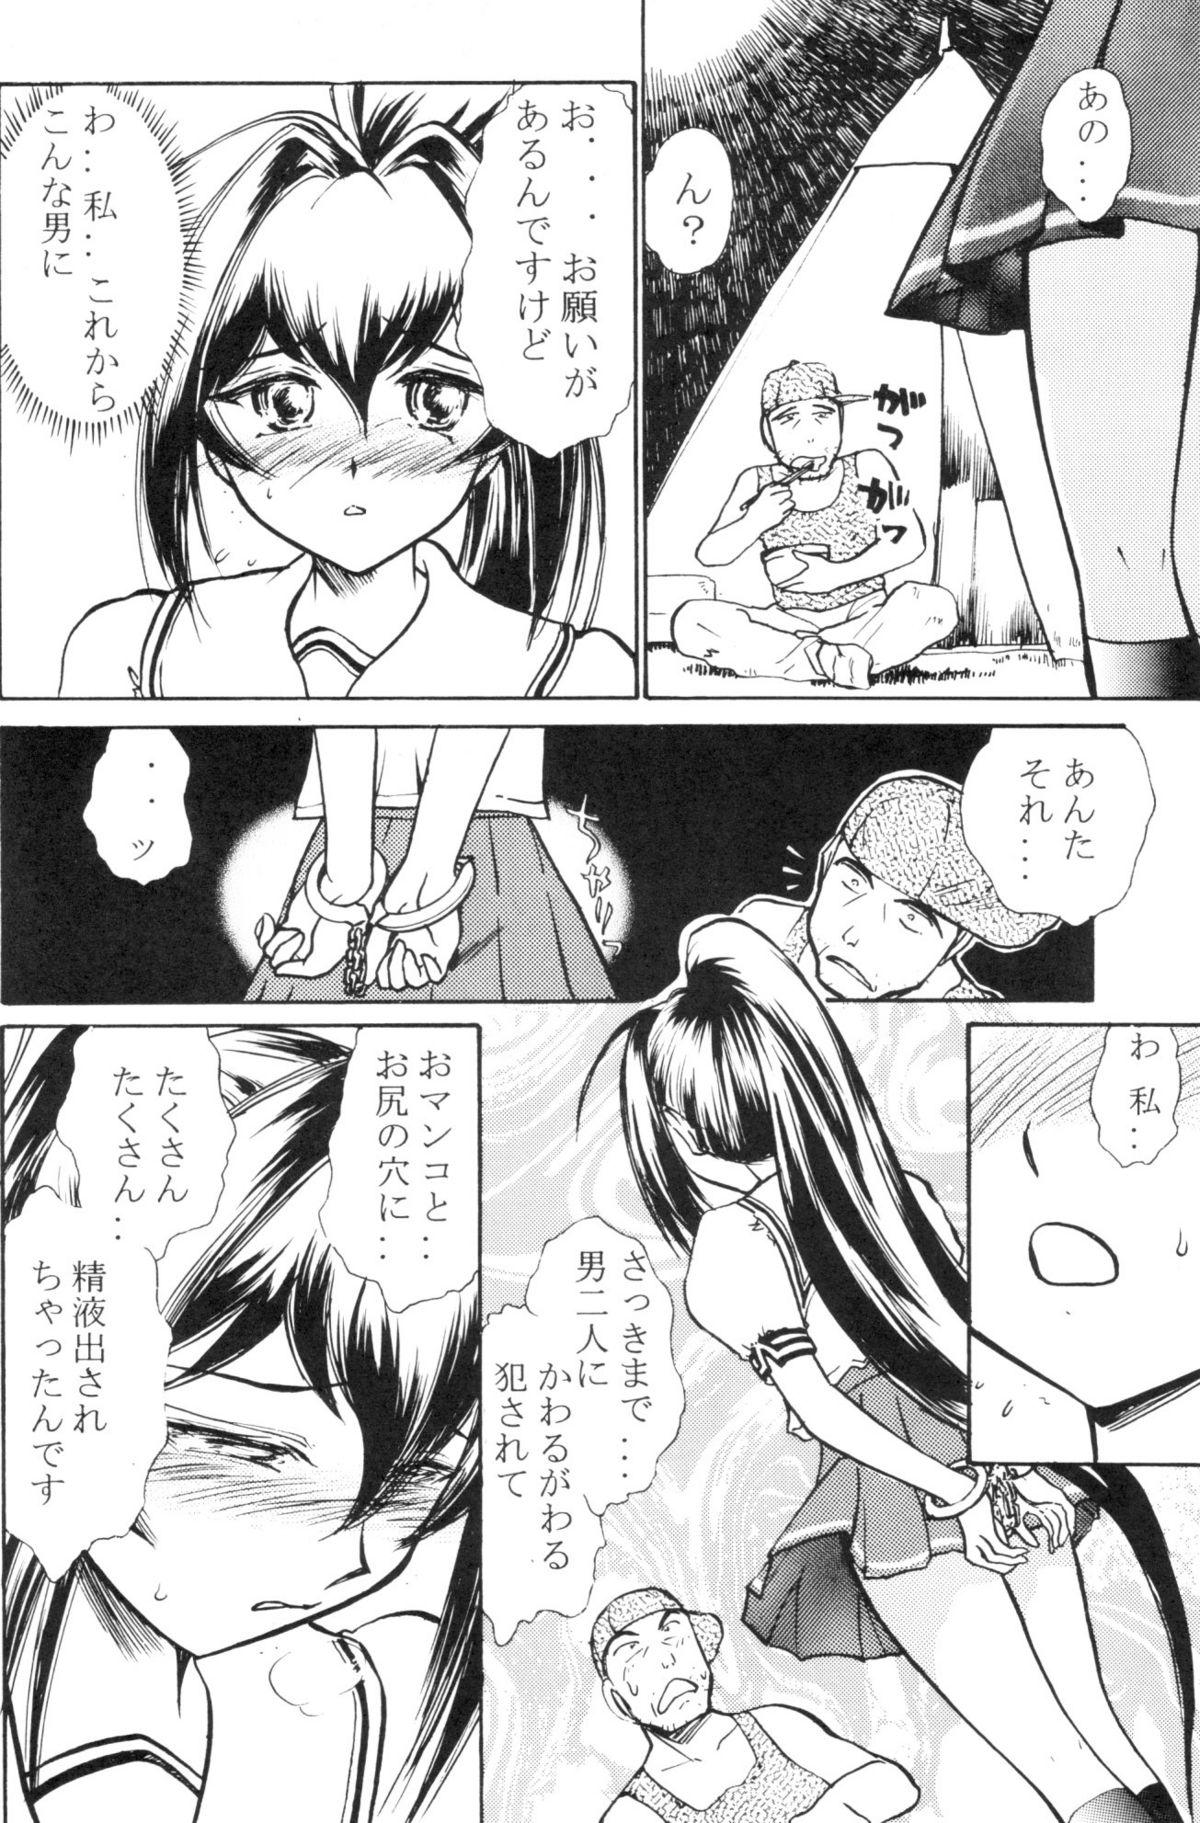 Suck Namida Tsuki Roku - Kimi ga nozomu eien Couple Sex - Page 5